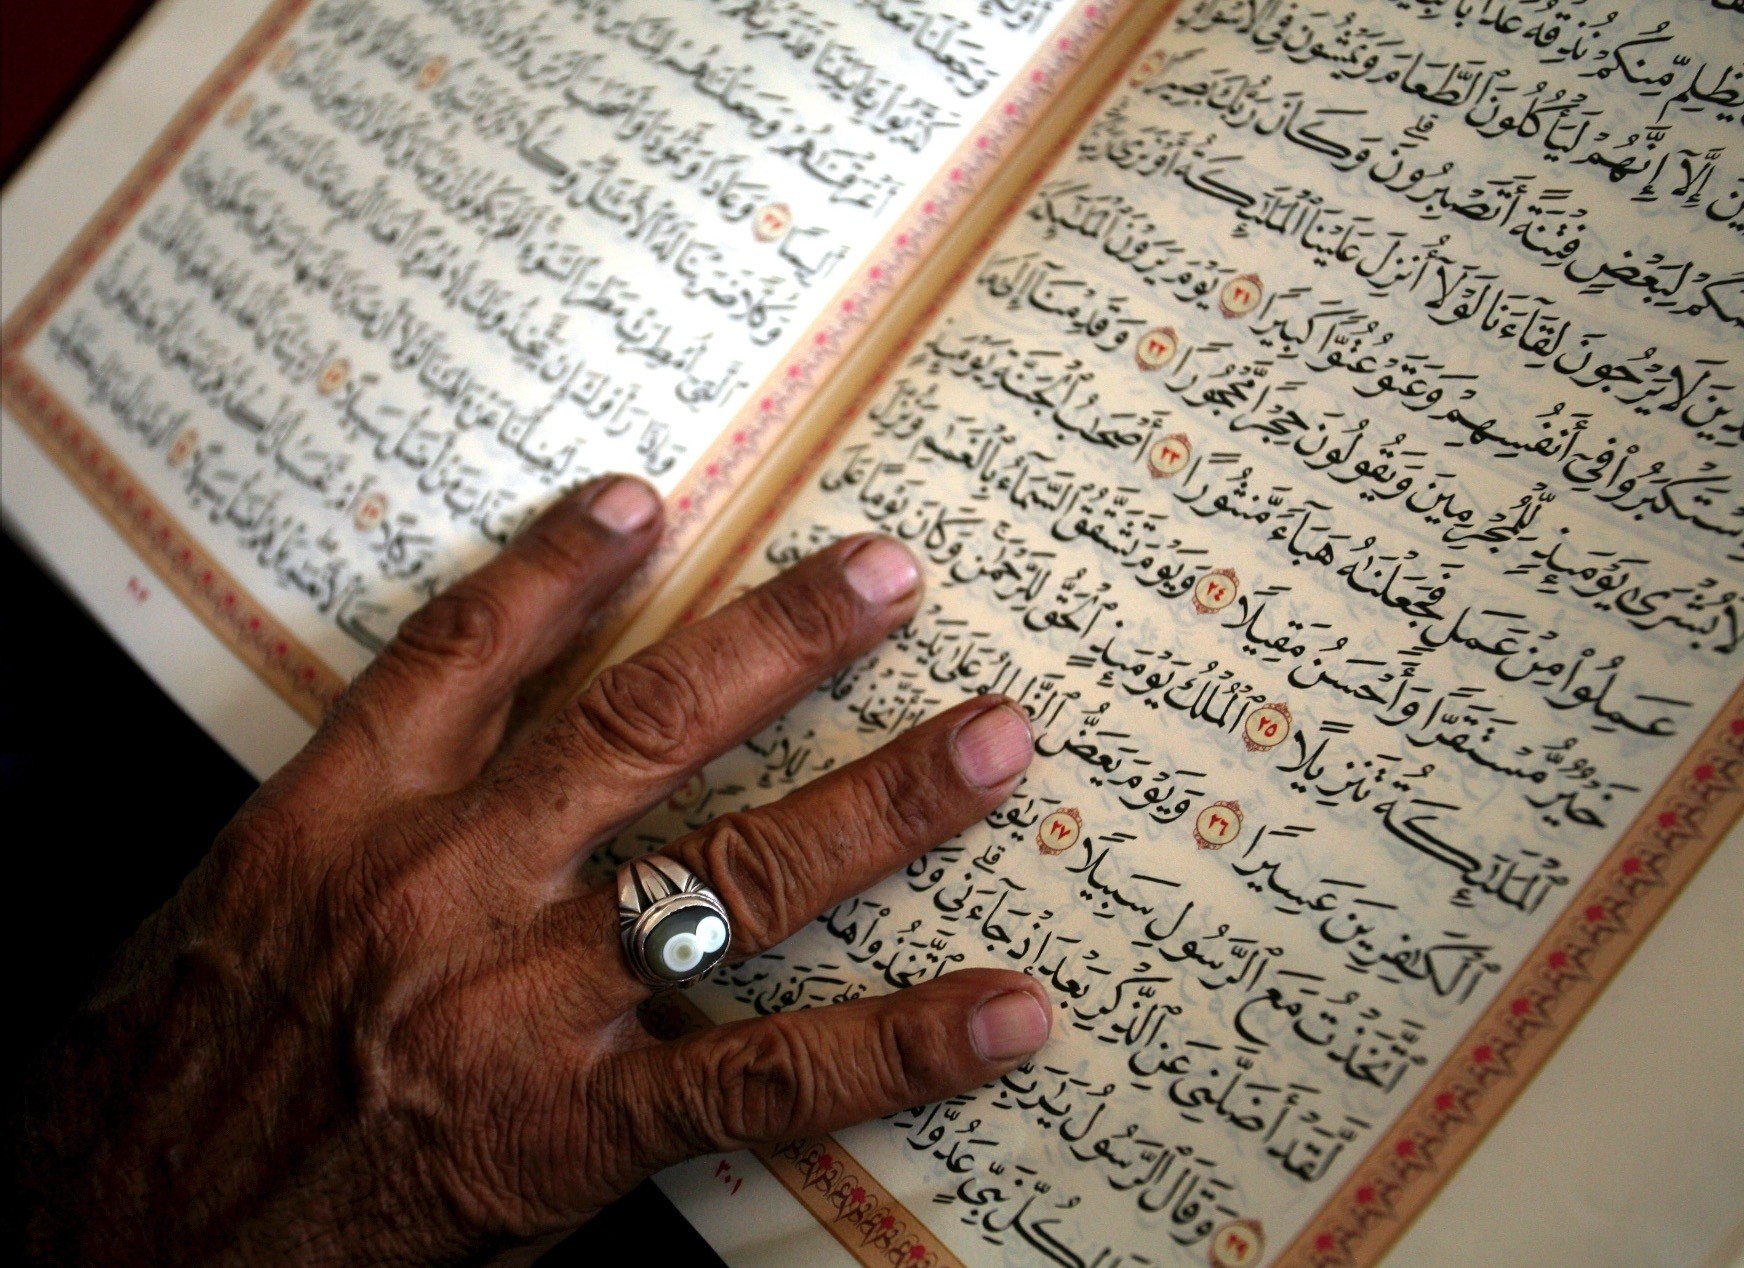 Coranul, cartea sfântă a musulmanilor